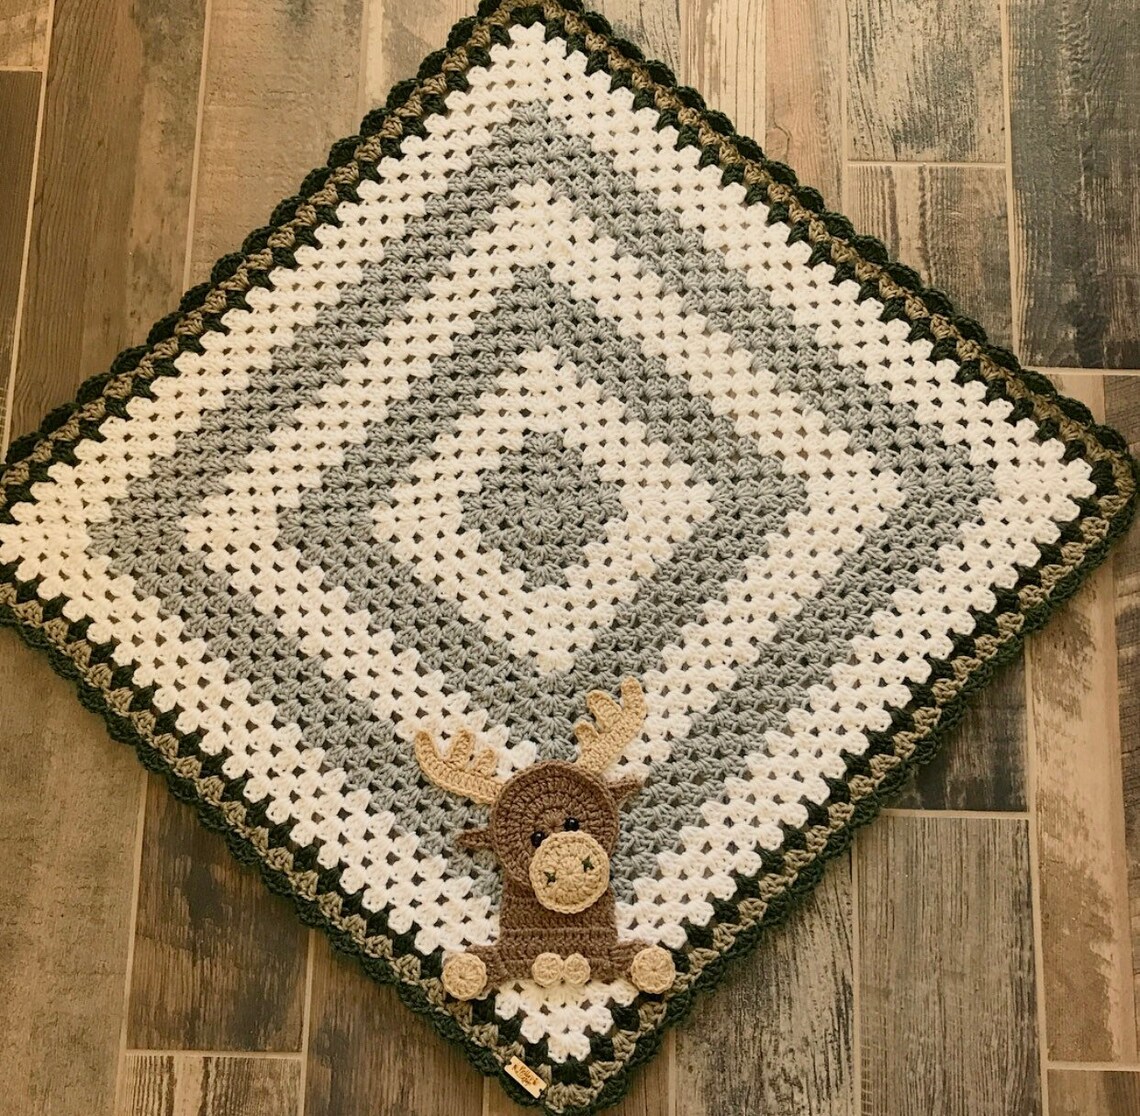 Blanket Moose Baby Blanket Crocheted Moose Blanket Baby | Etsy